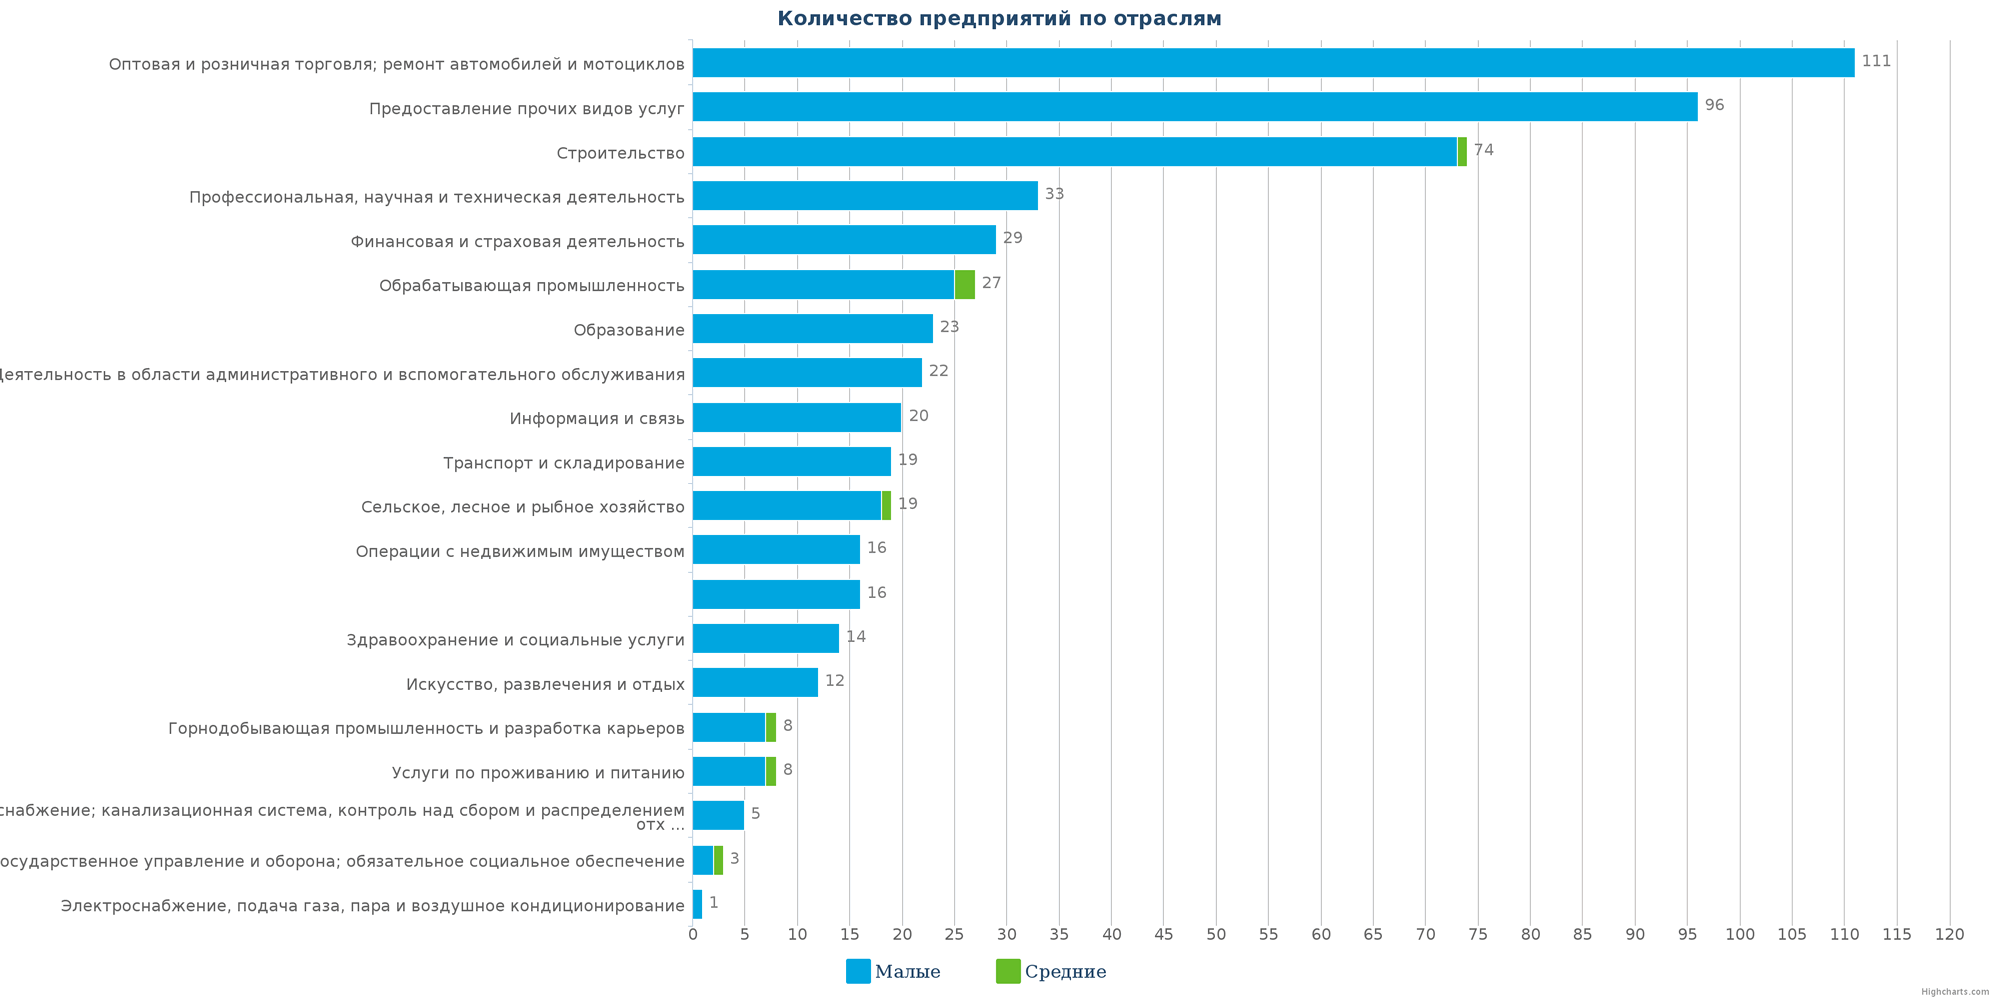 Количество новых юридических лиц в реестре Казахстана по отраслям